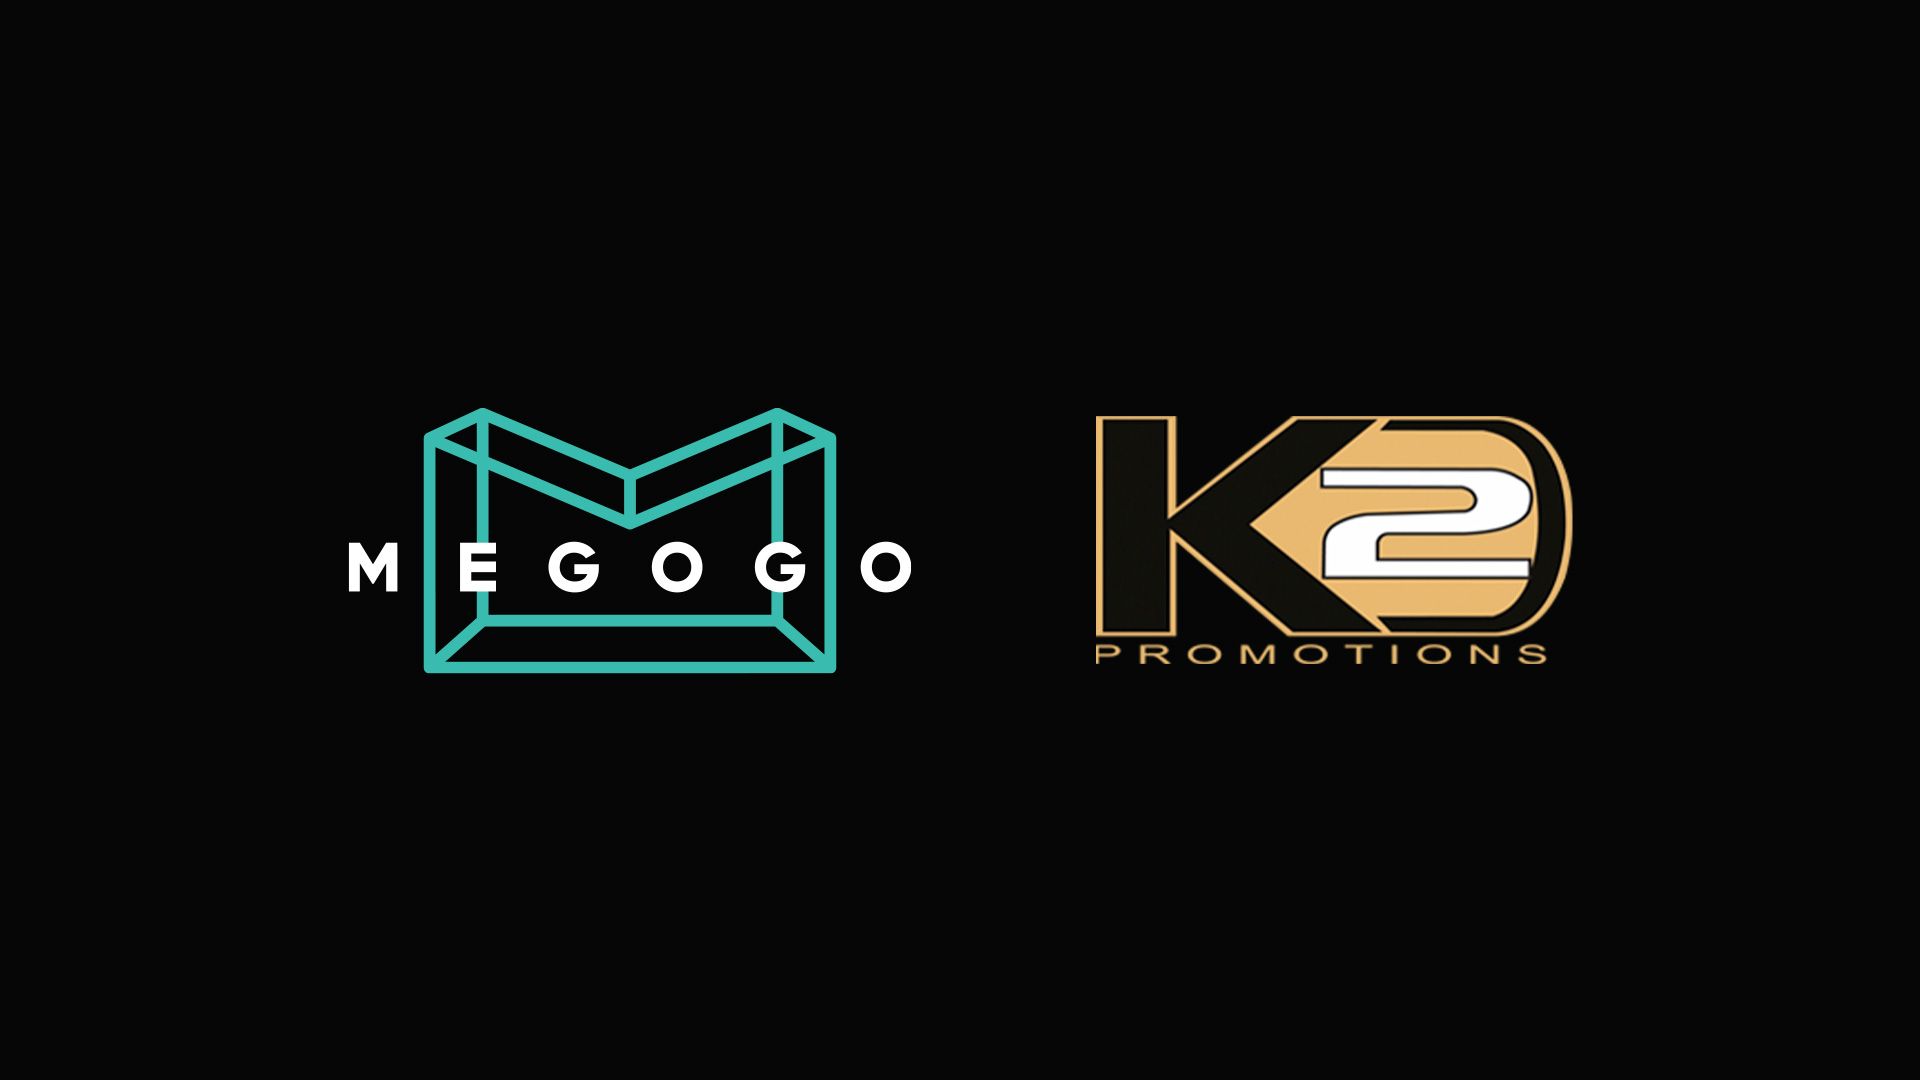 MEGOGO и К2 Promotion Ukraine